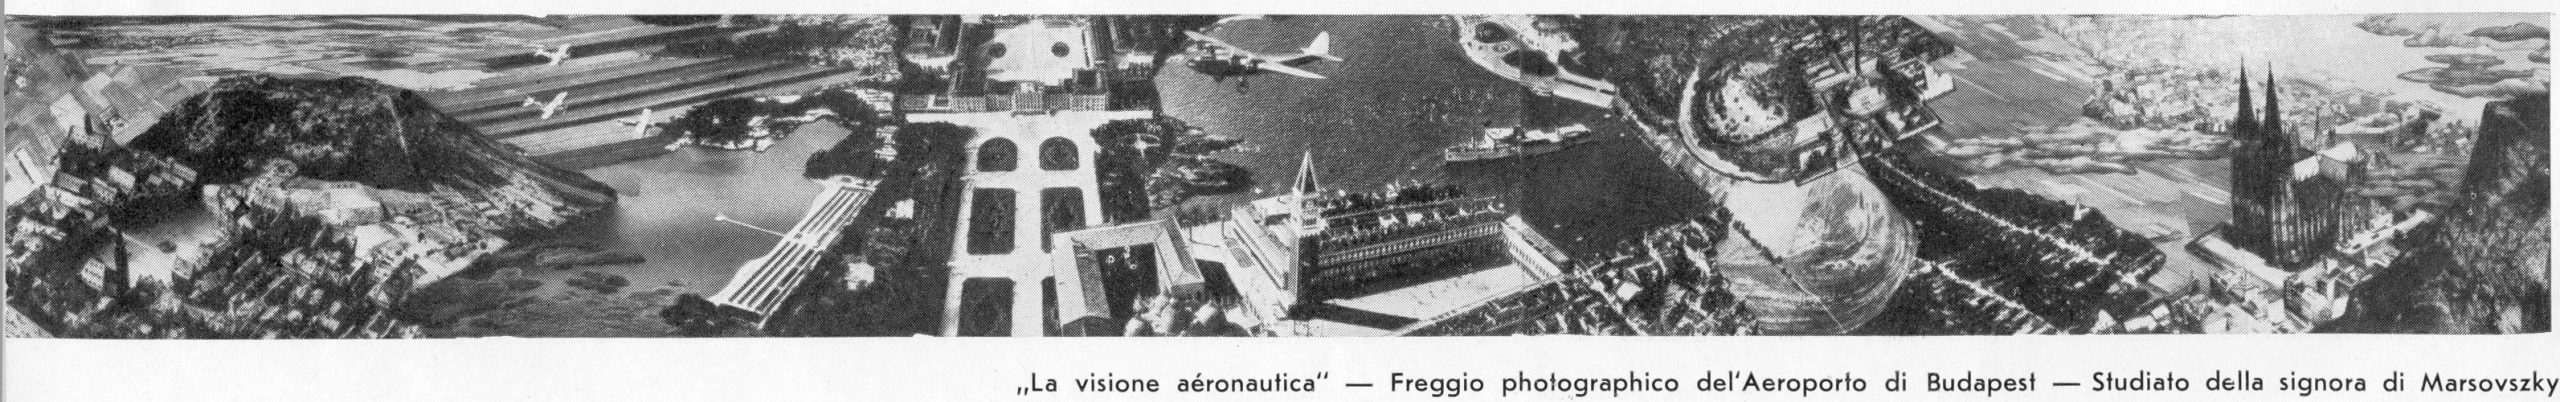 Budaörsi repülőtér. Nagycsarnok. Fotó: Marsovszky Elemérné Belvárosi Fotóműhely, 1937. © Magyar Építészeti Múzeum